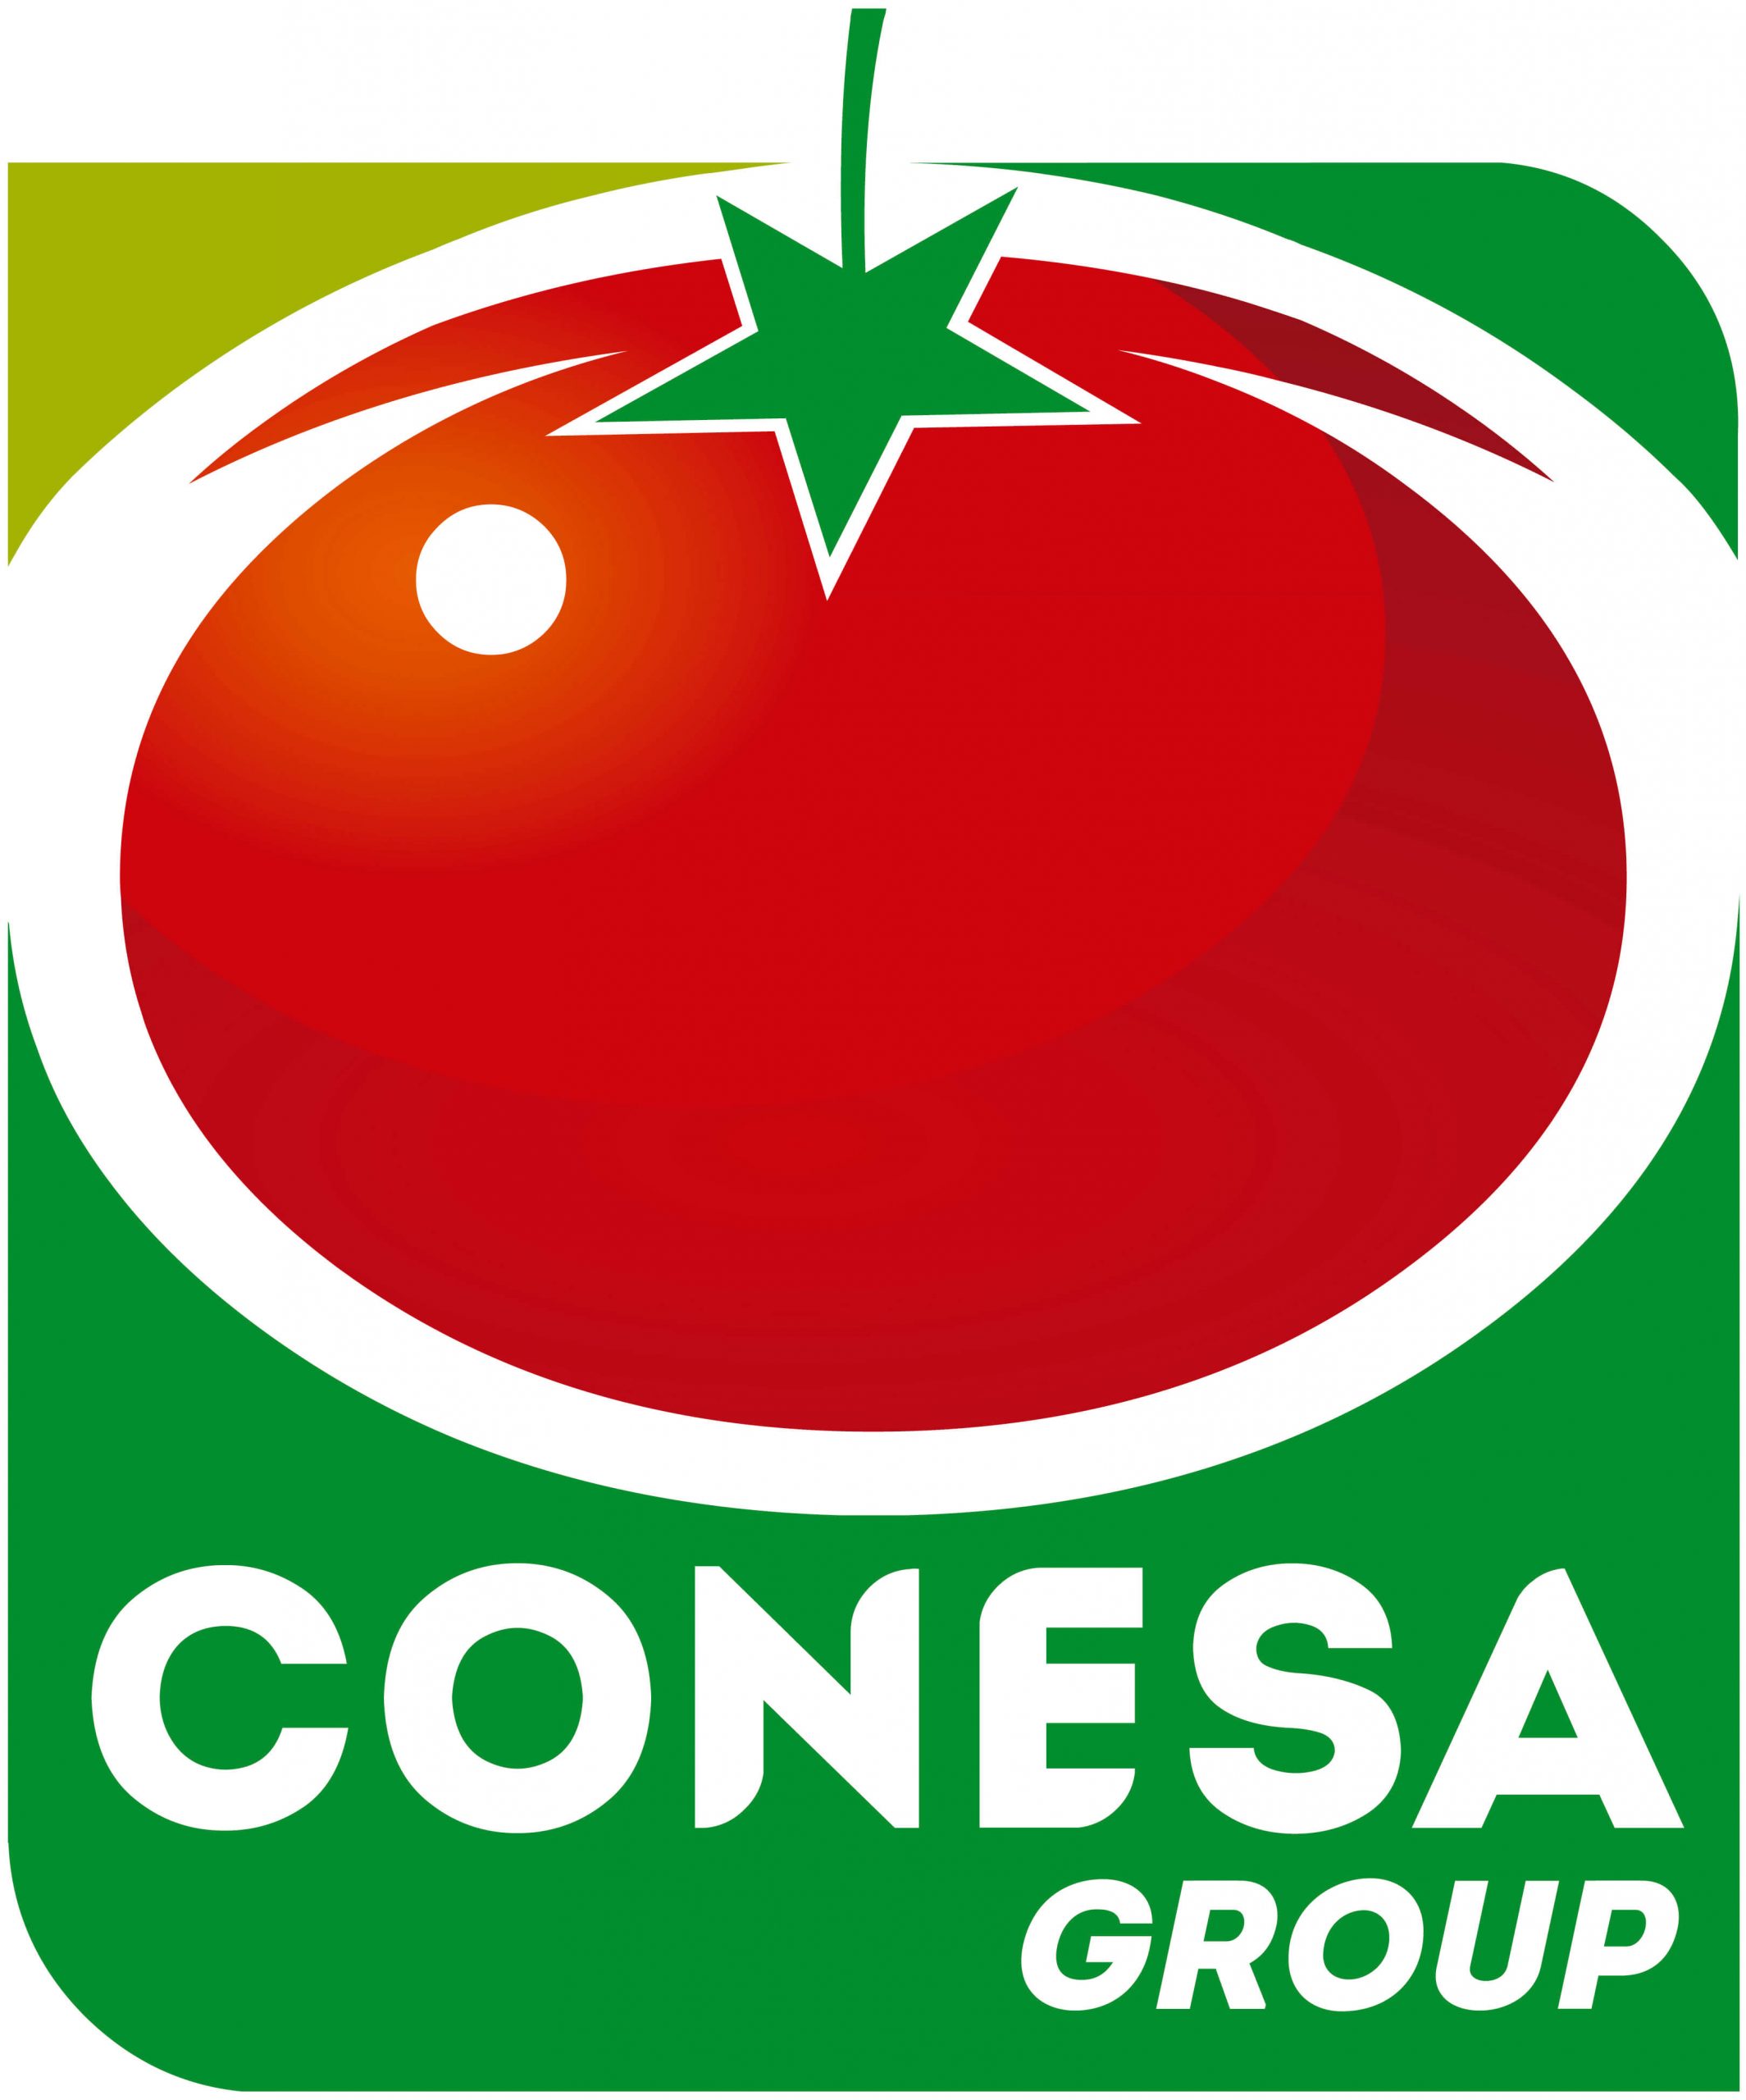 Conesa Group logo